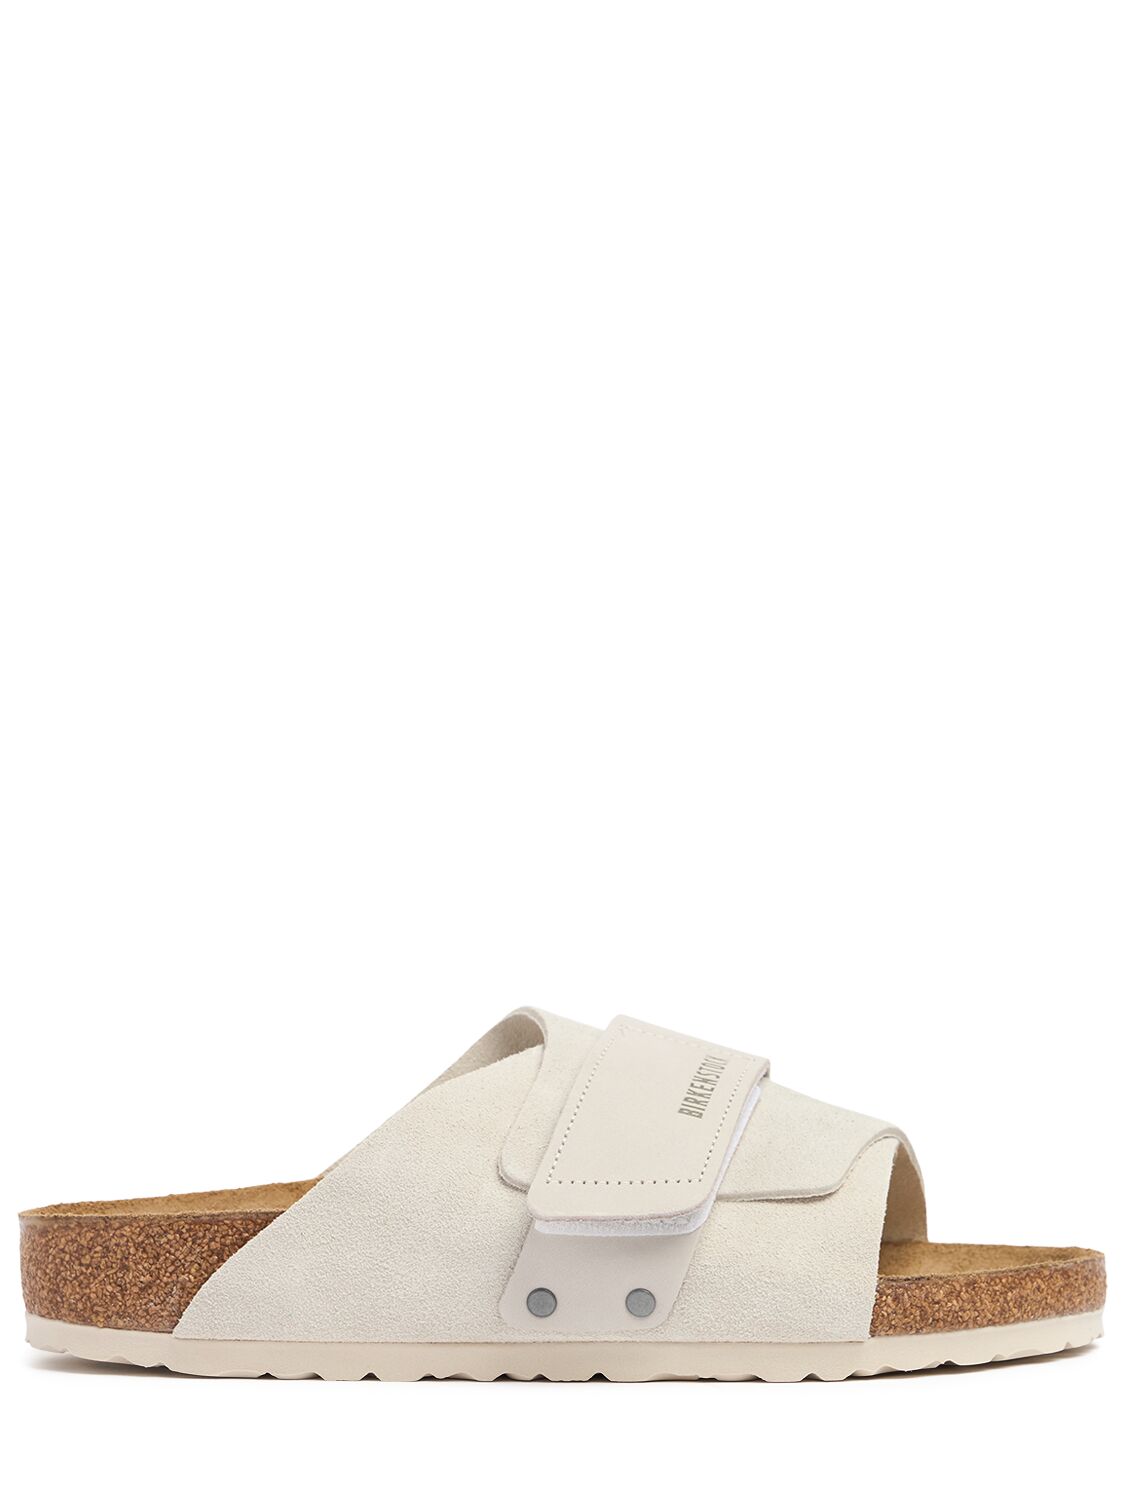 Shop Birkenstock Kyoto Suede Sandals In Beige/white